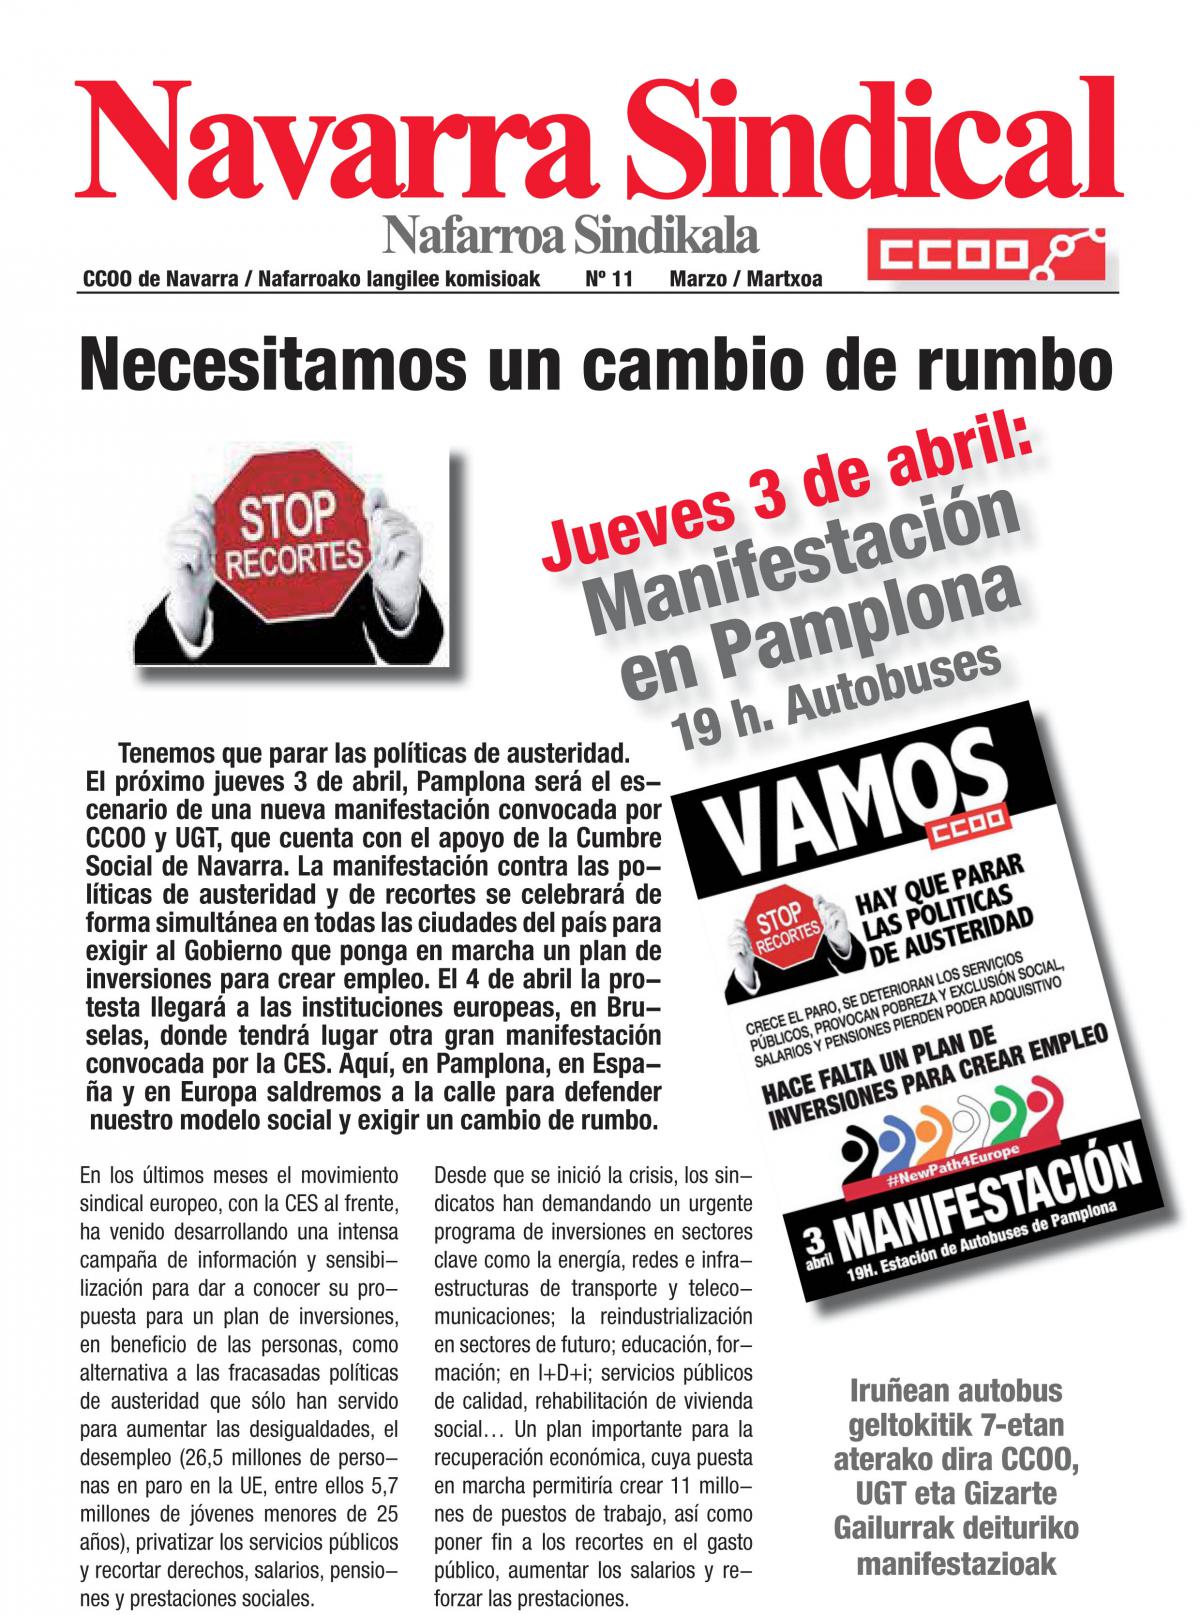 Necesitamos un cambio de rumbo. 3 de abril, manifestación en Pamplona